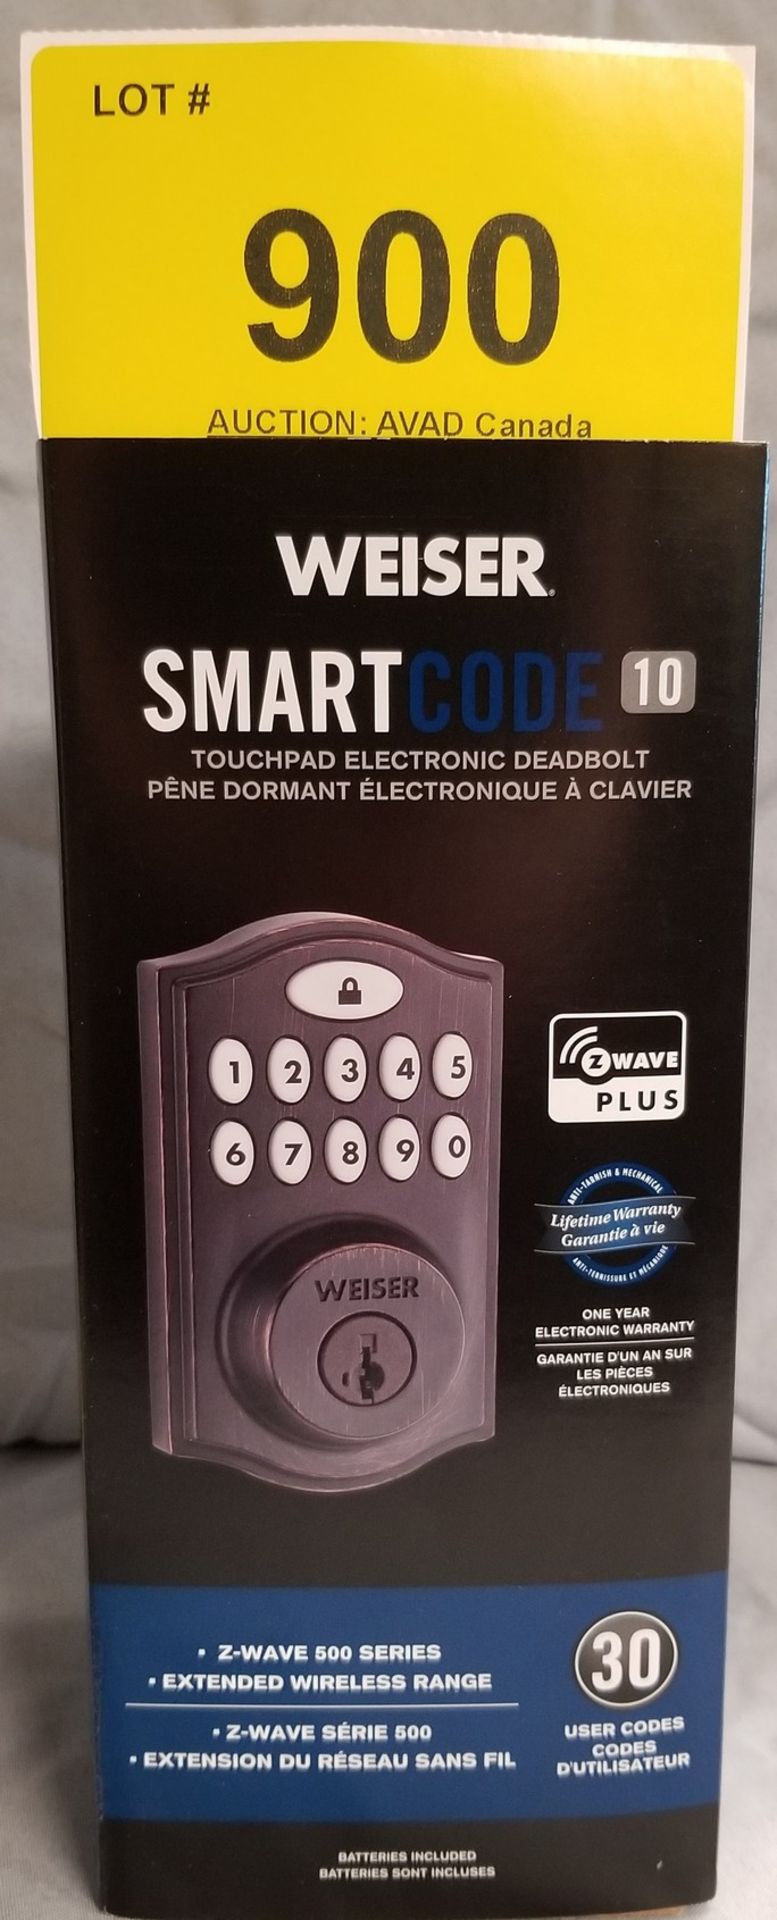 WEISER SMART CODE 10 TOUCHPAD ELECTRONIC DEADBOLT - (BNIB) MSRP $199